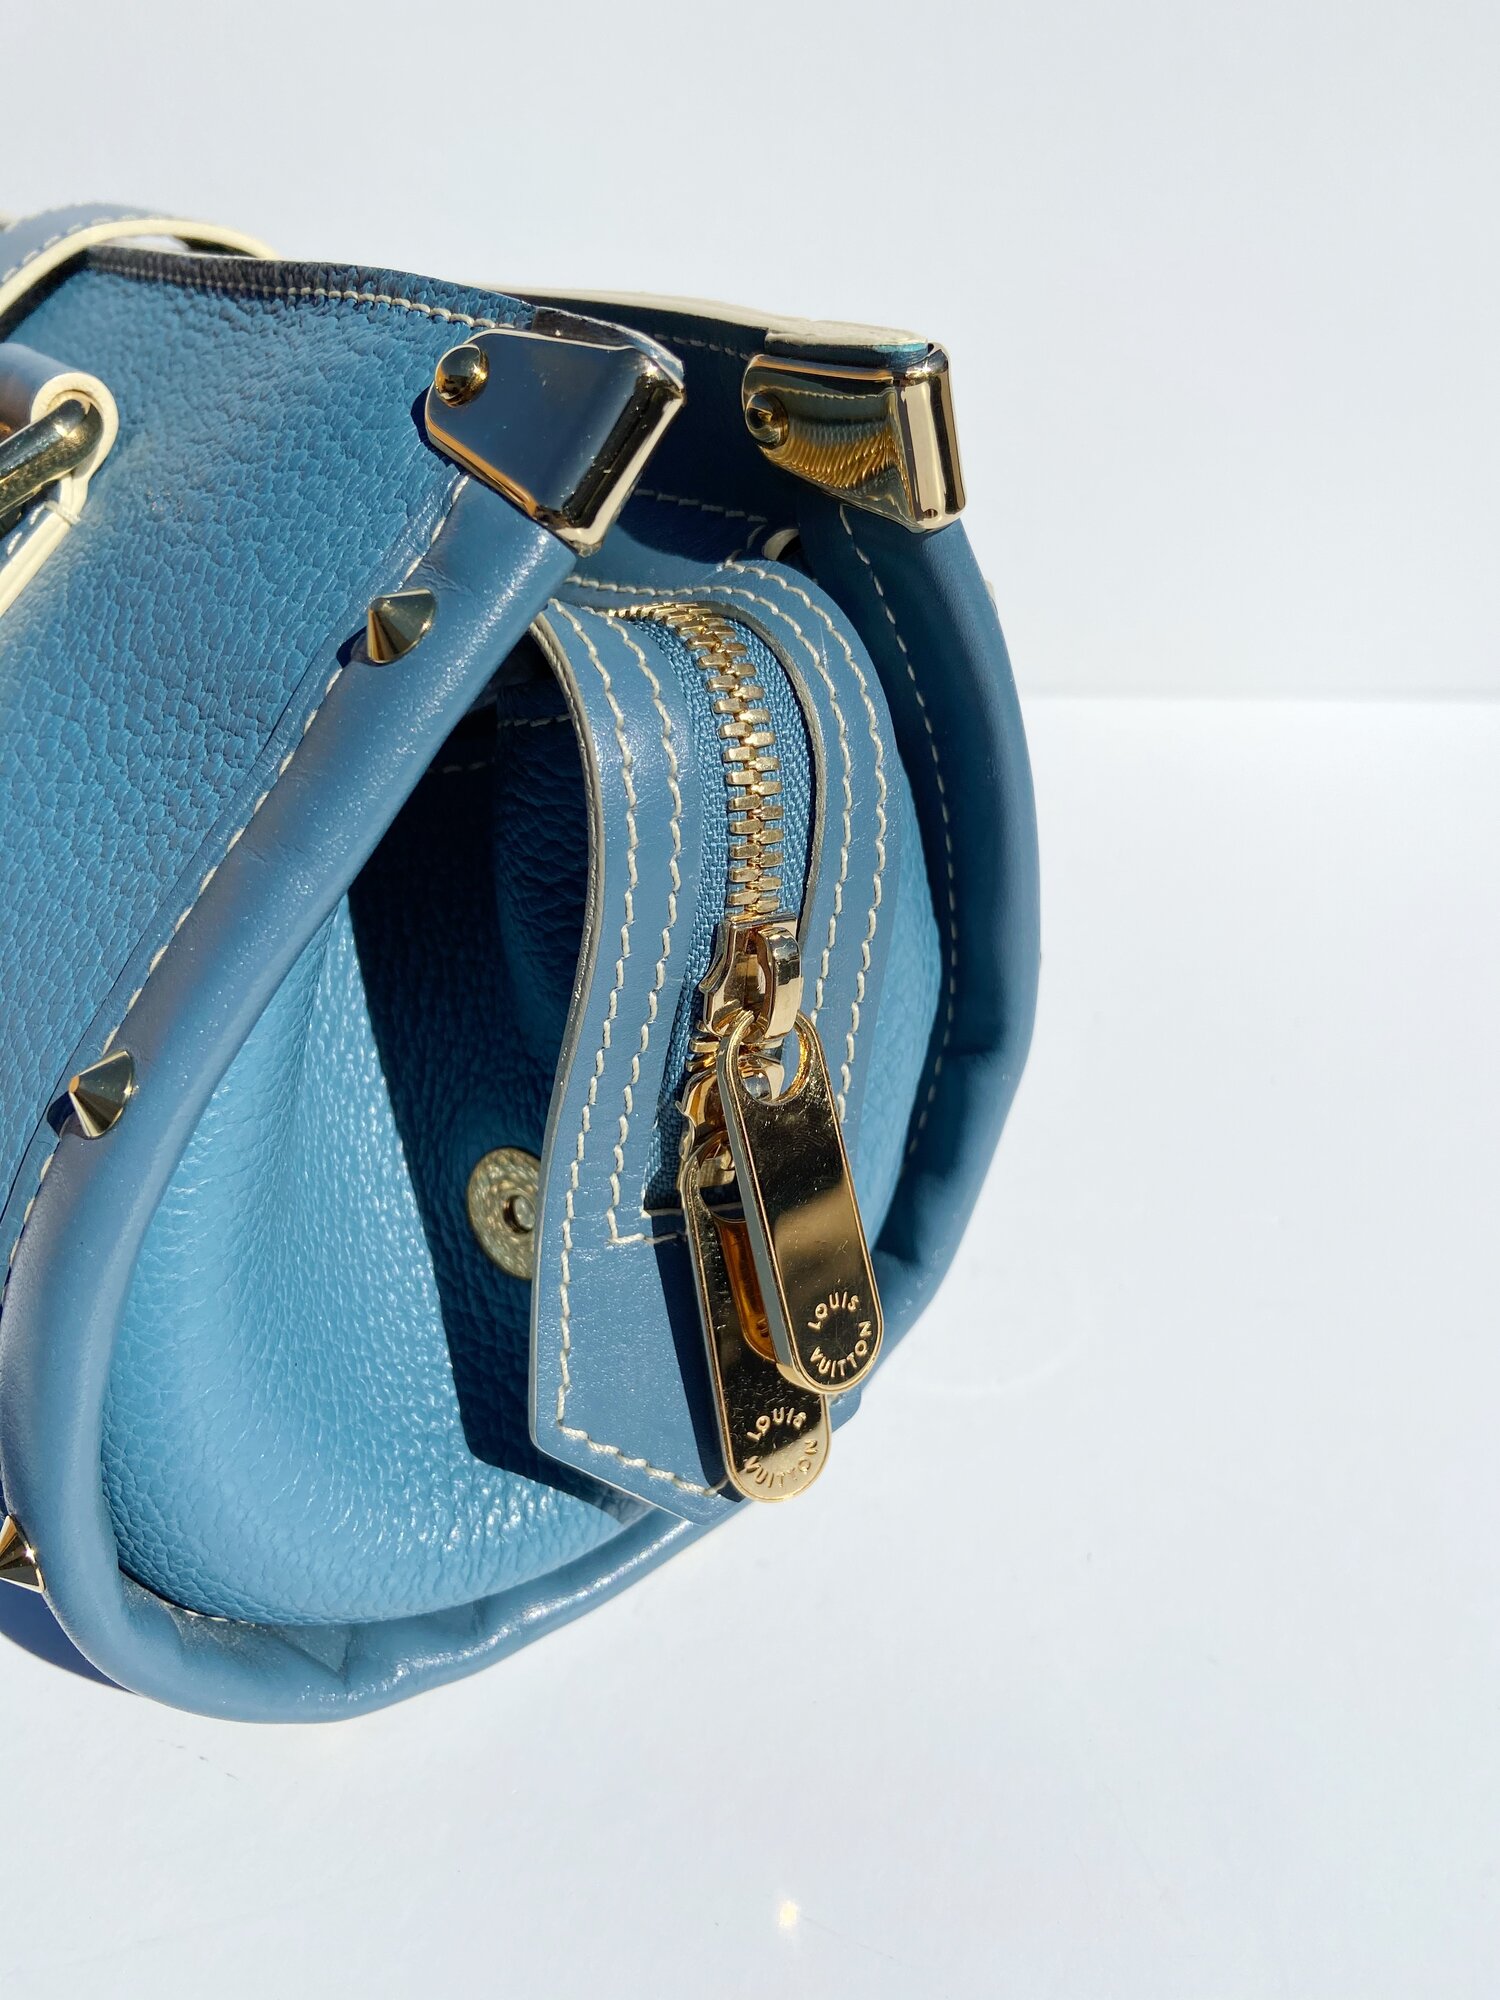 Néonoé leather handbag Louis Vuitton Beige in Leather - 22231790